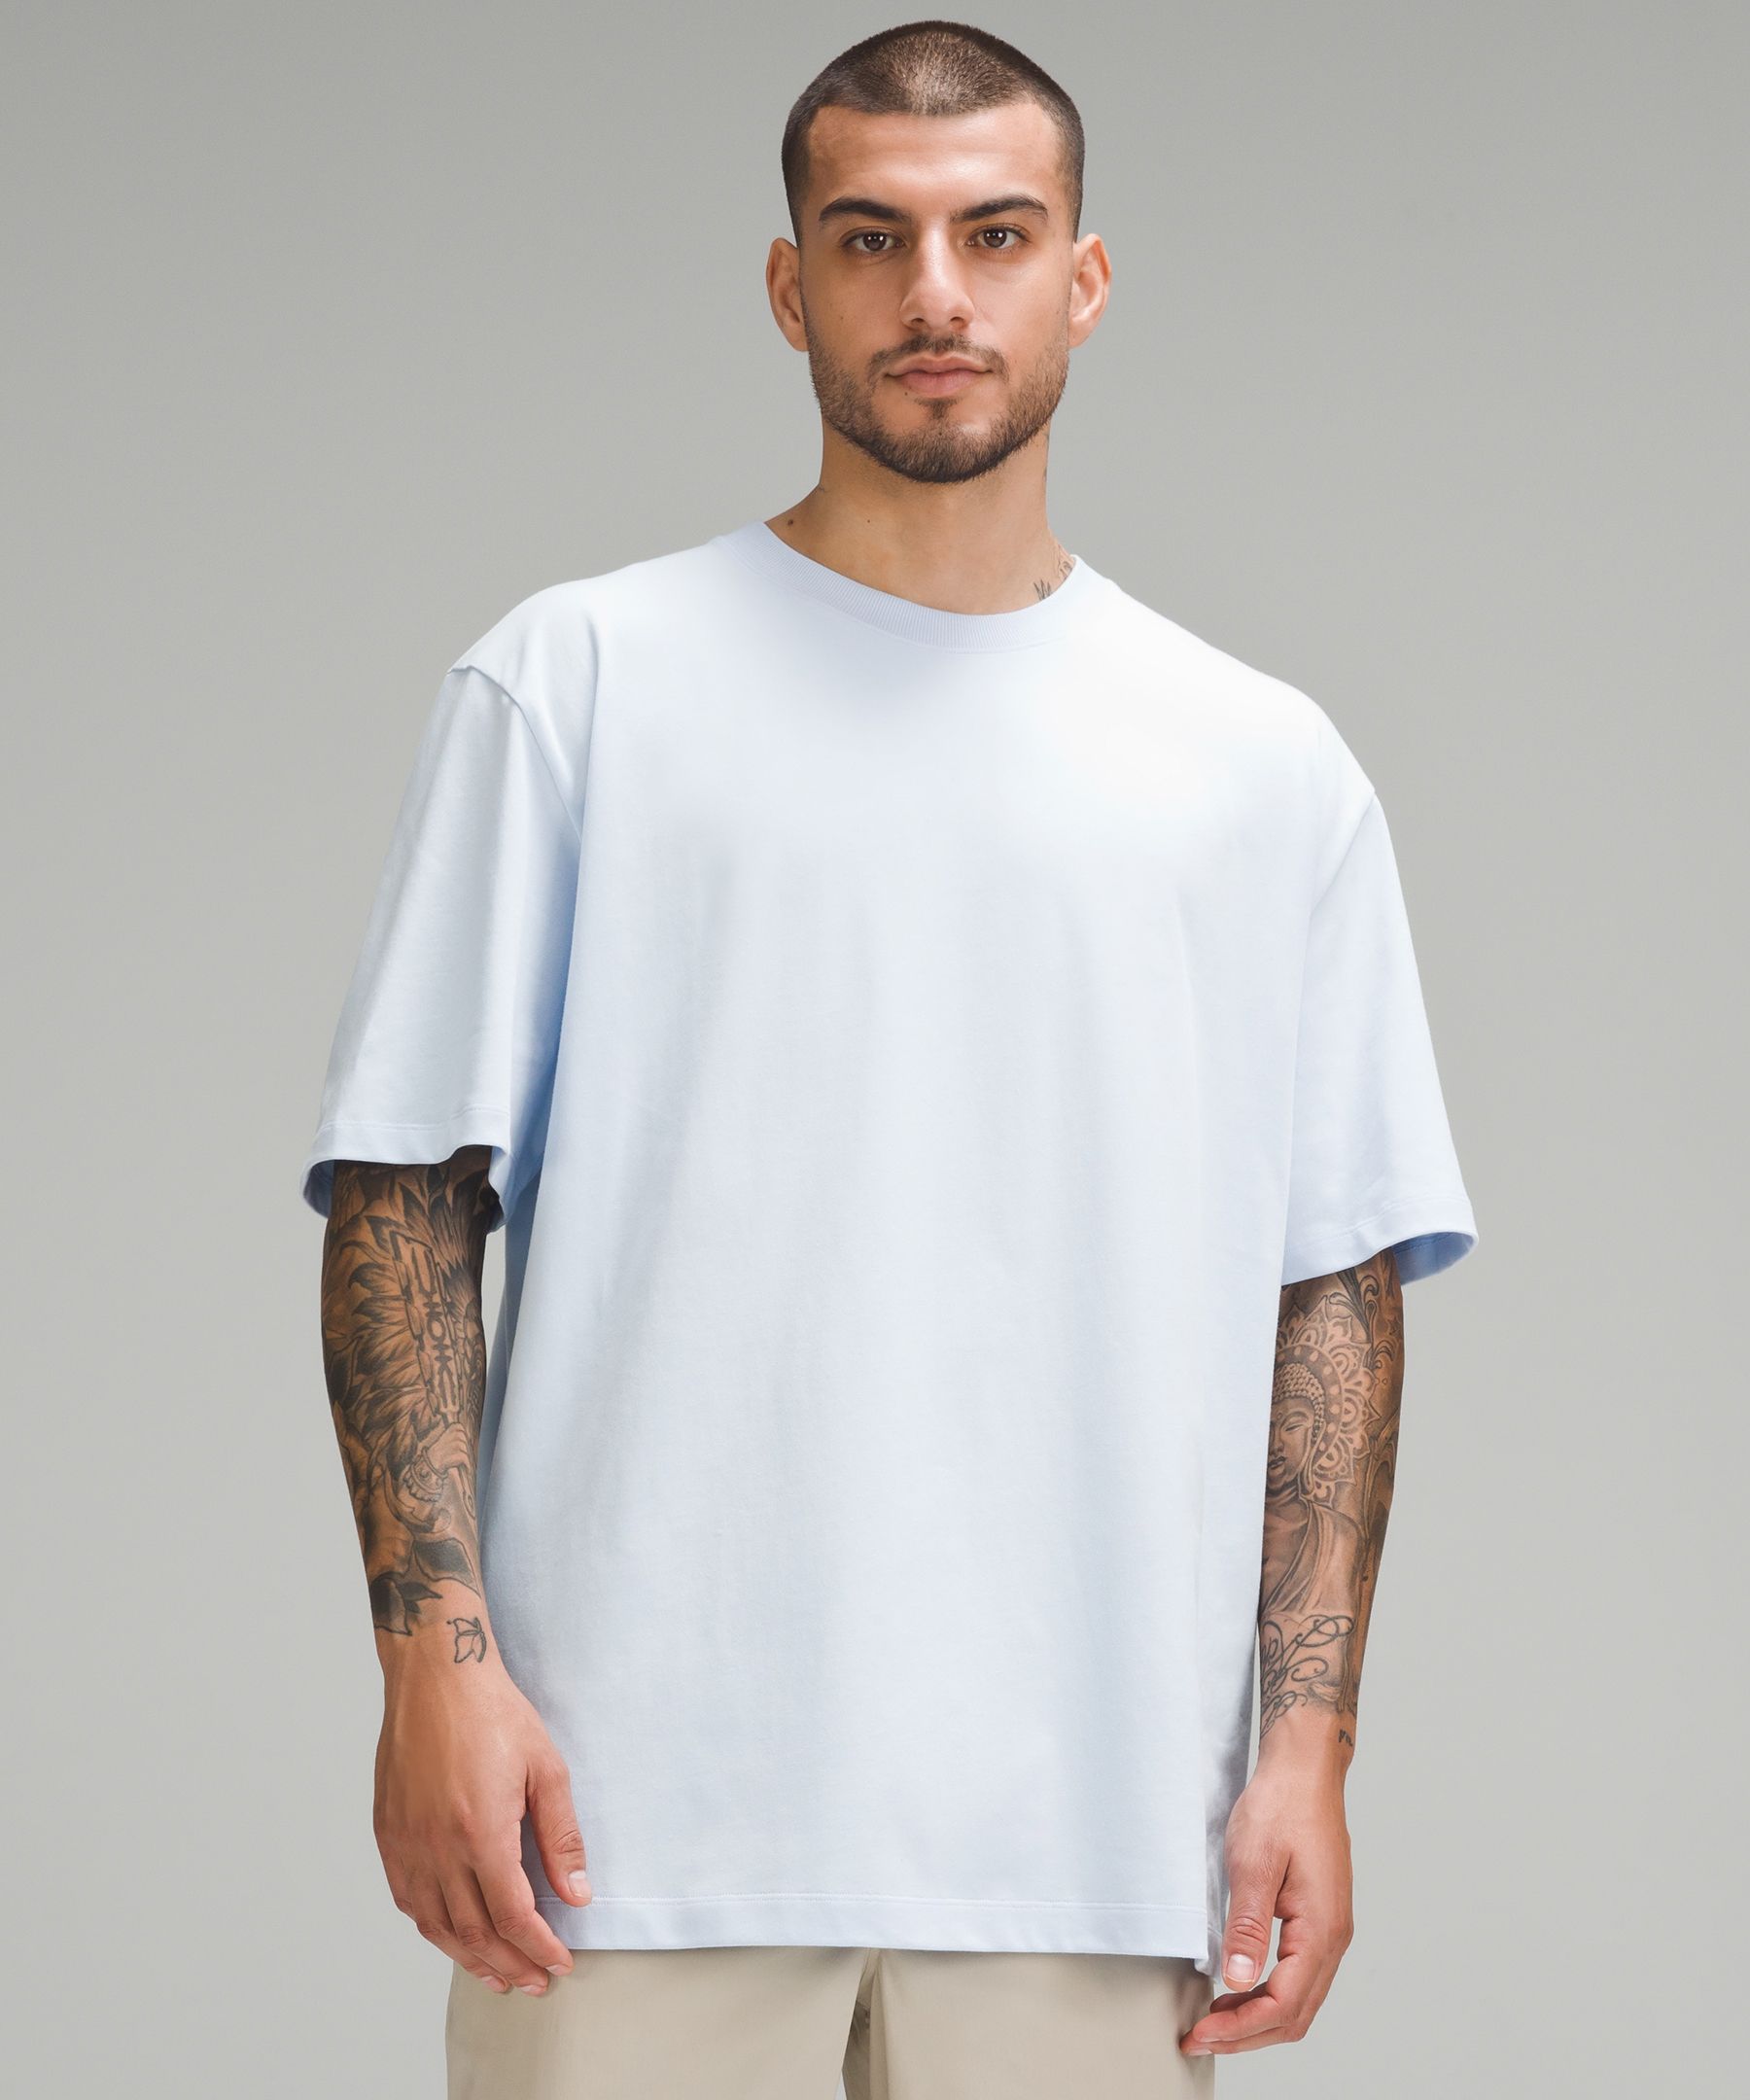 Heavyweight Cotton Jersey T-Shirt, Men's Short Sleeve Shirts & Tee's